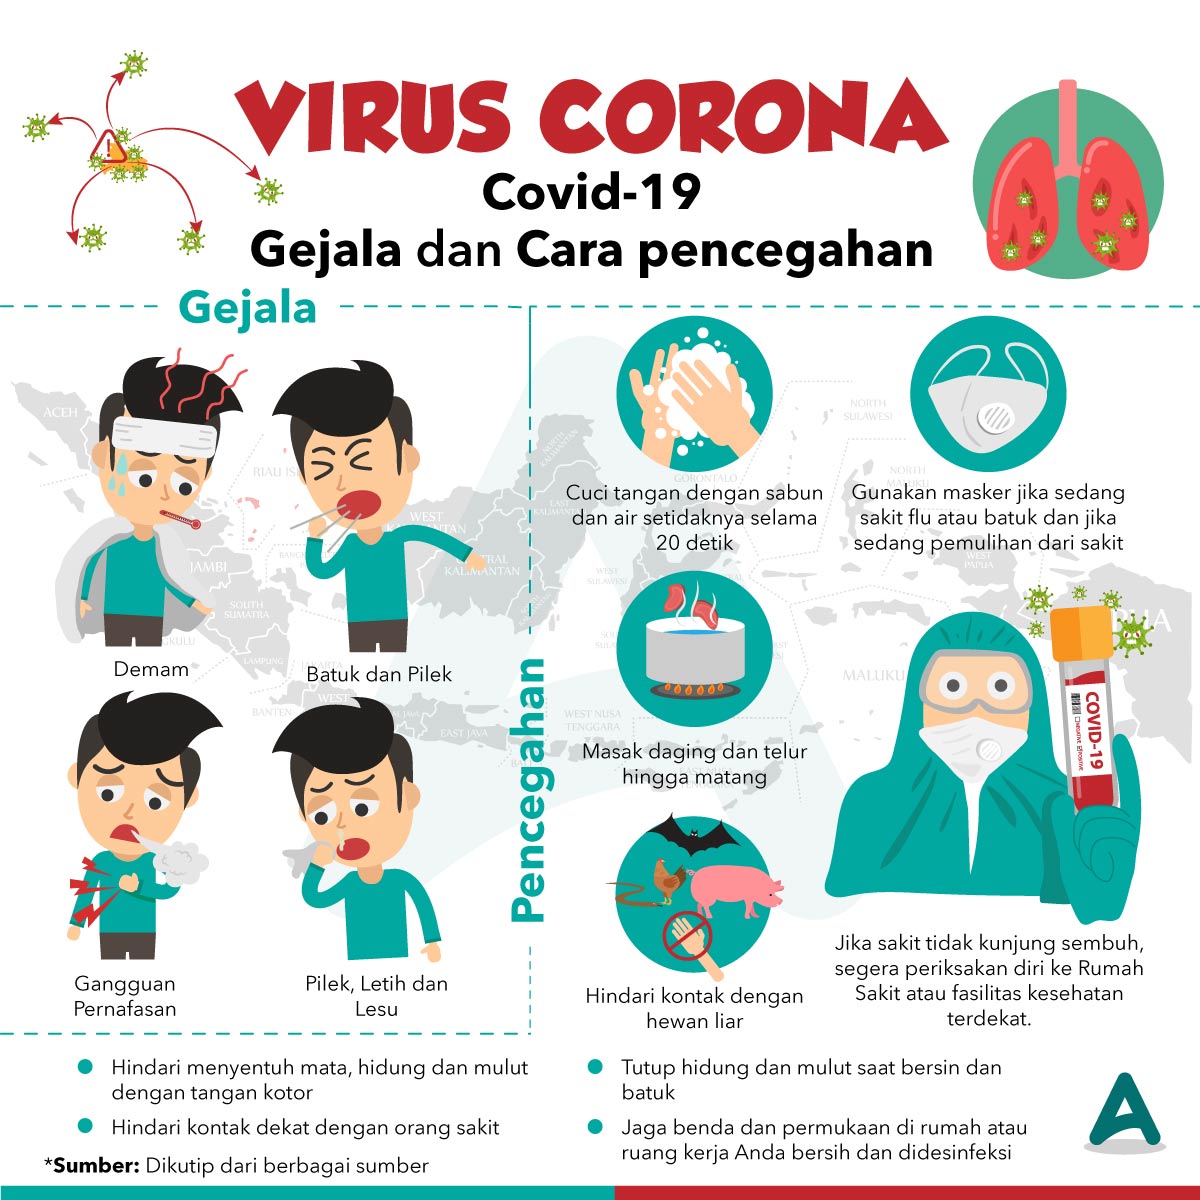 Mengatasi virus corona